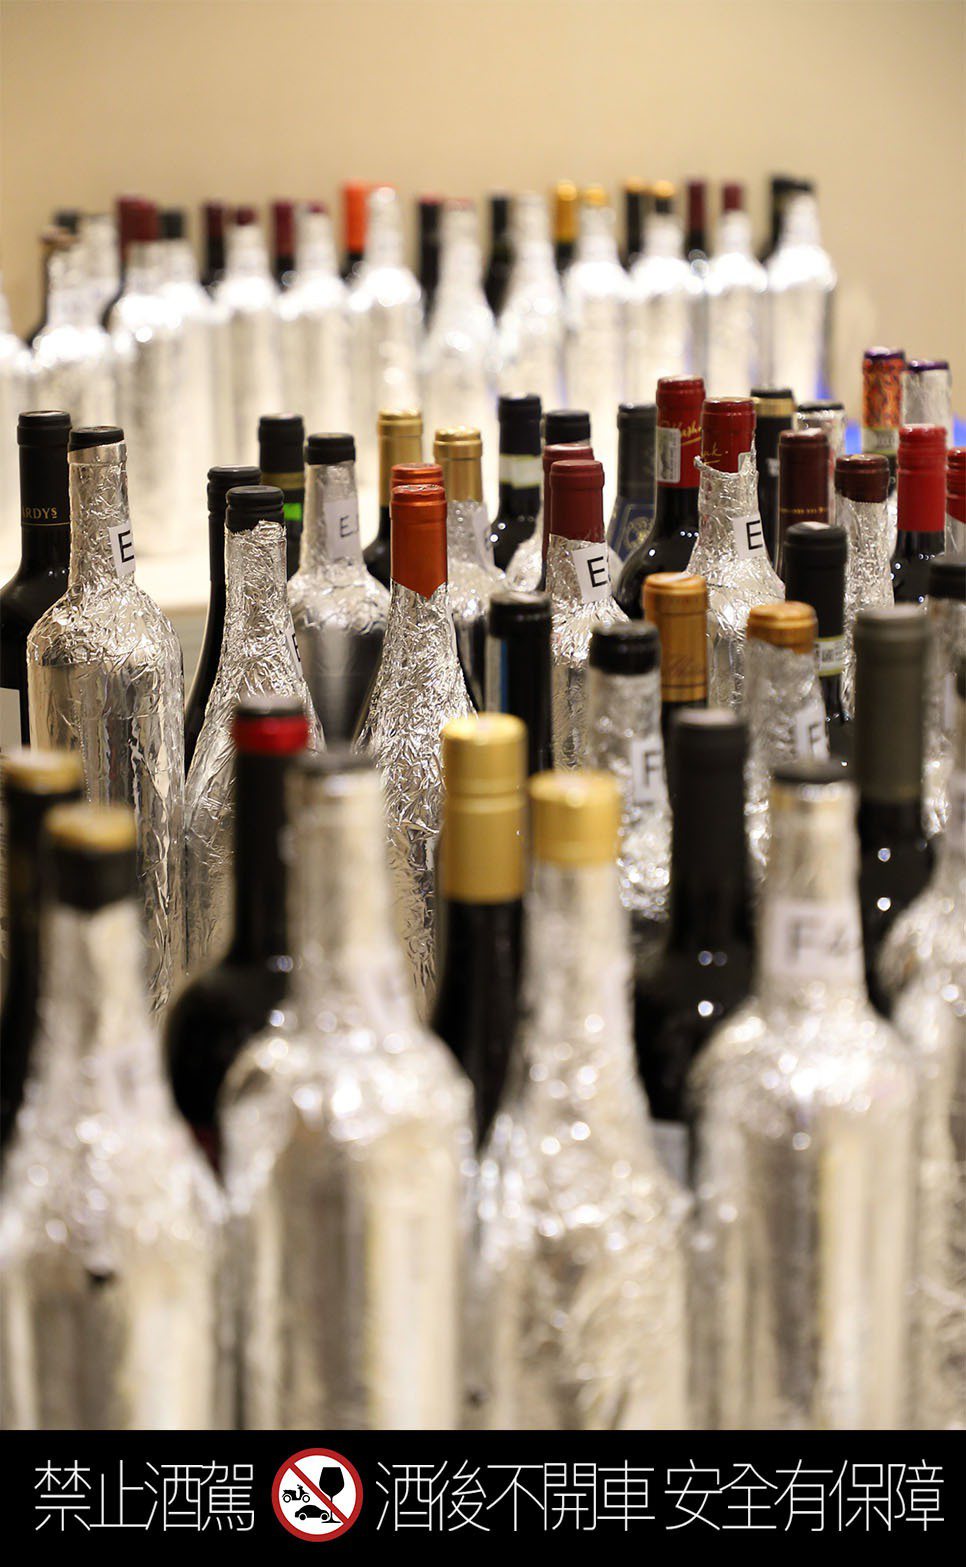 2022年的「WSD葡萄酒大賞」共有近200款各式葡萄酒報名。酒訊雜誌/提供